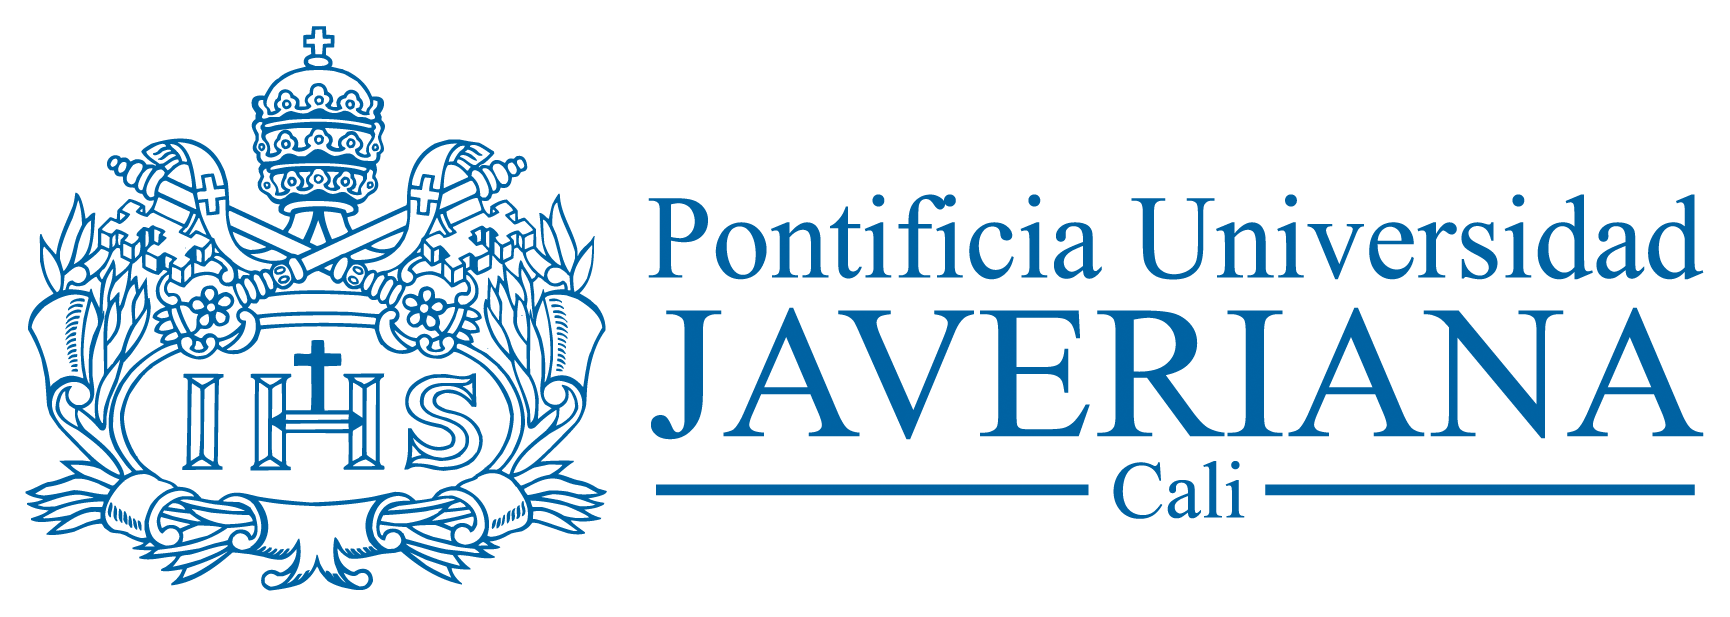 Logosímbolo de la Pontificia Universidad Javeriana - Cali